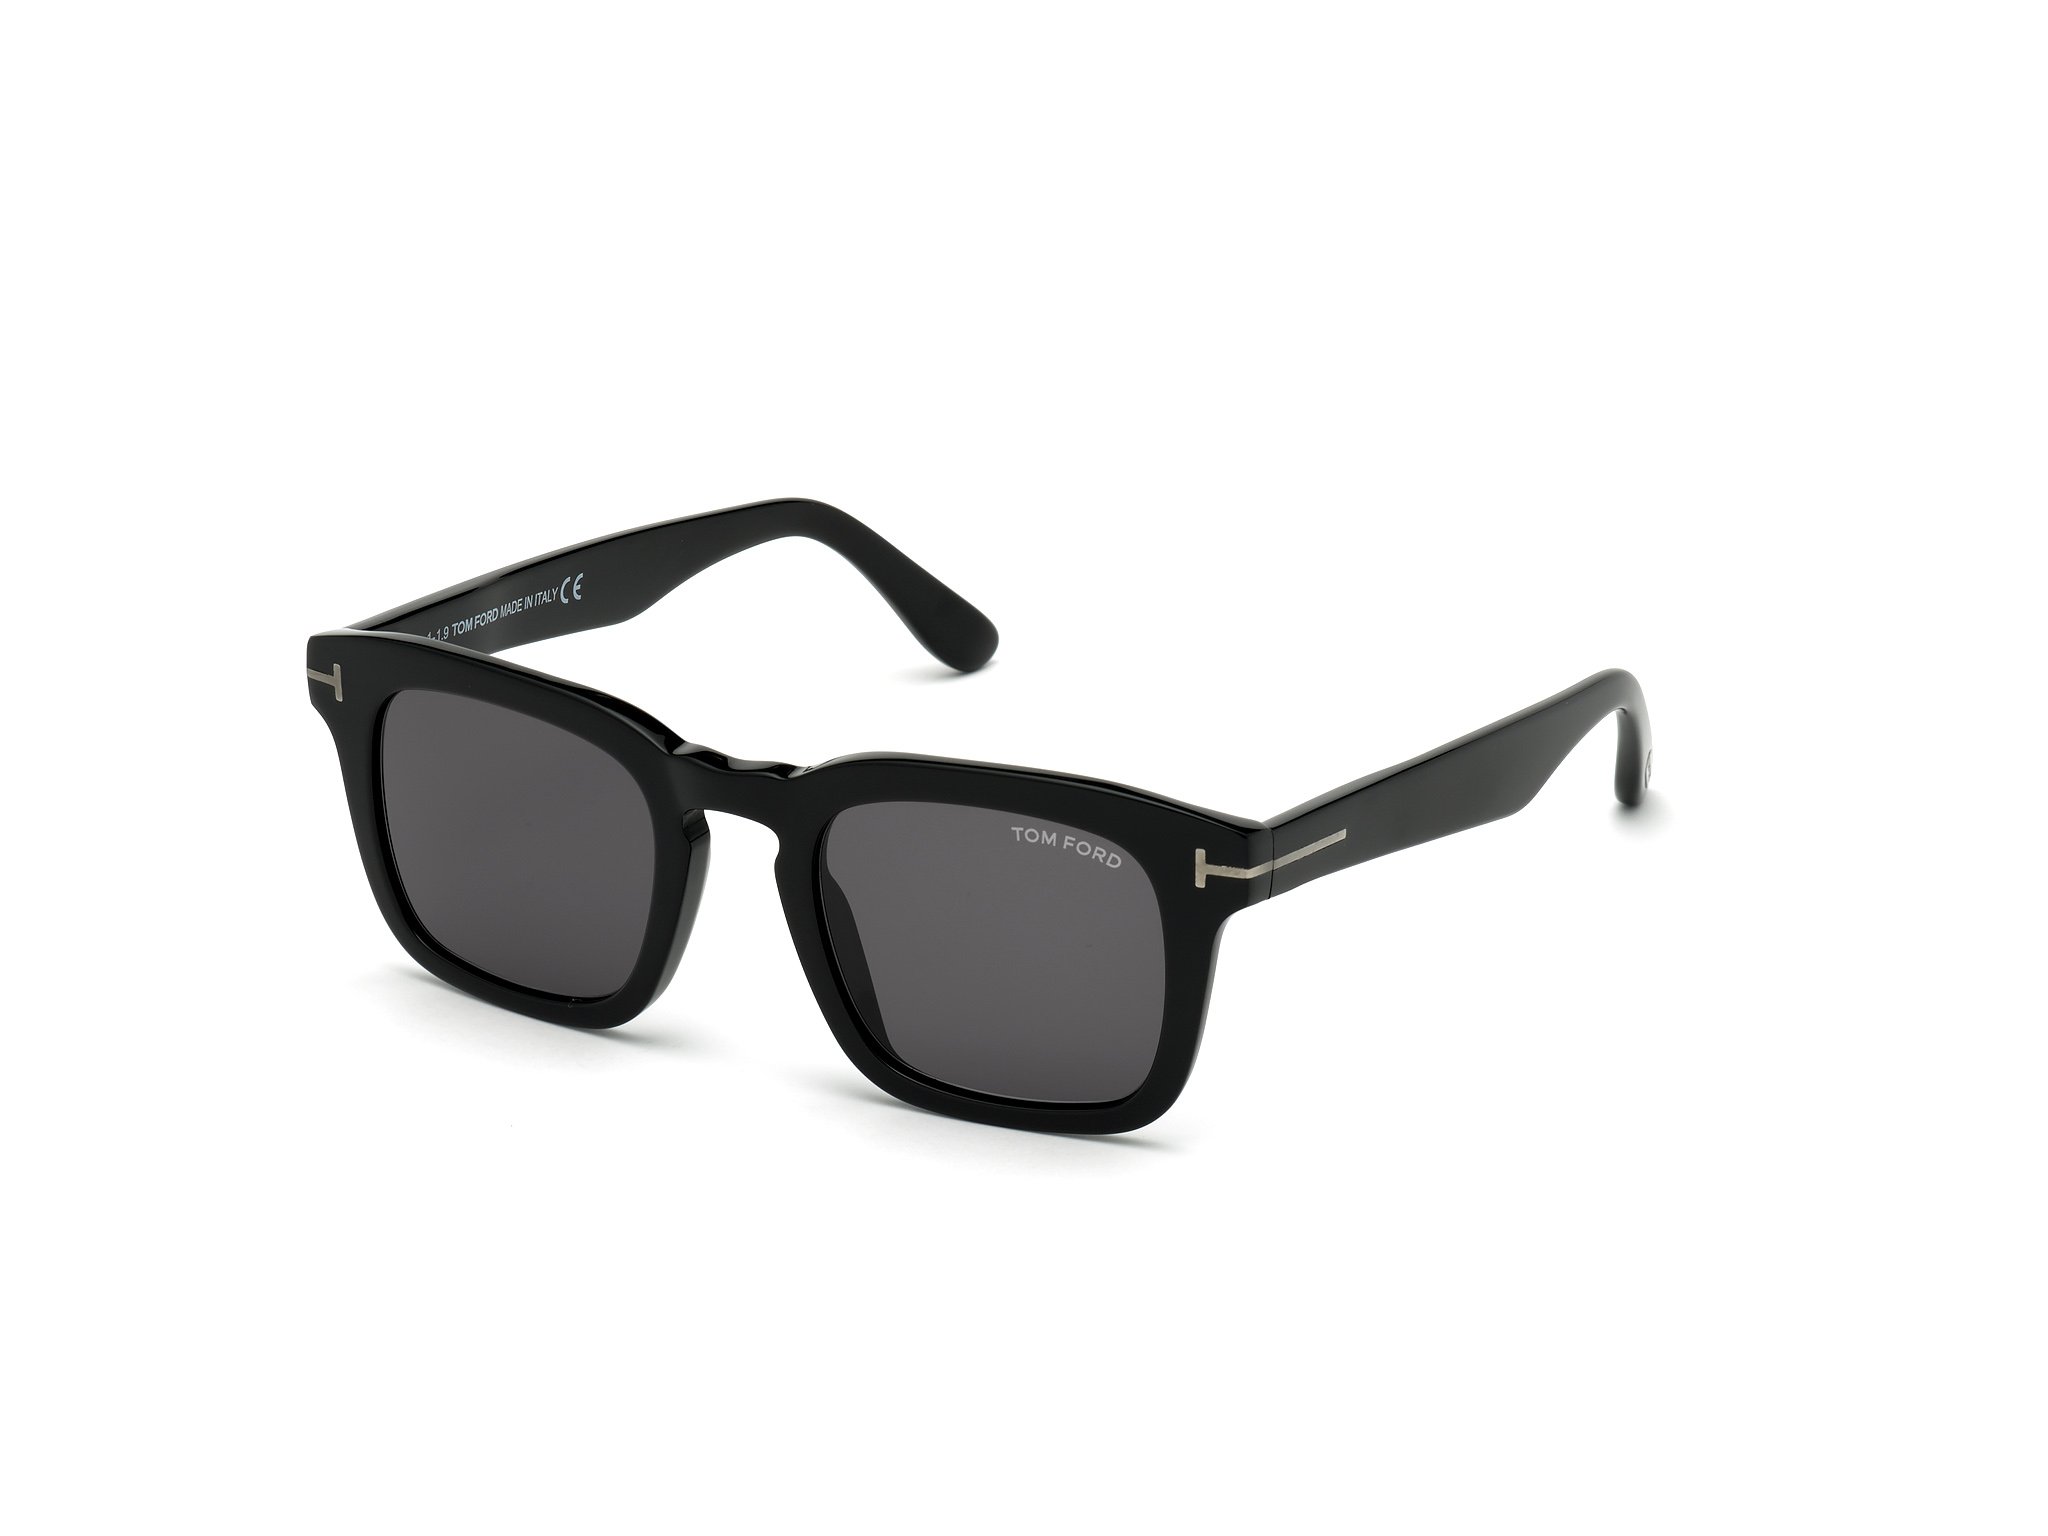 Das Bild zeigt die Sonnenbrille DAX FT0751 von der Marke Tom Ford in  schwarz